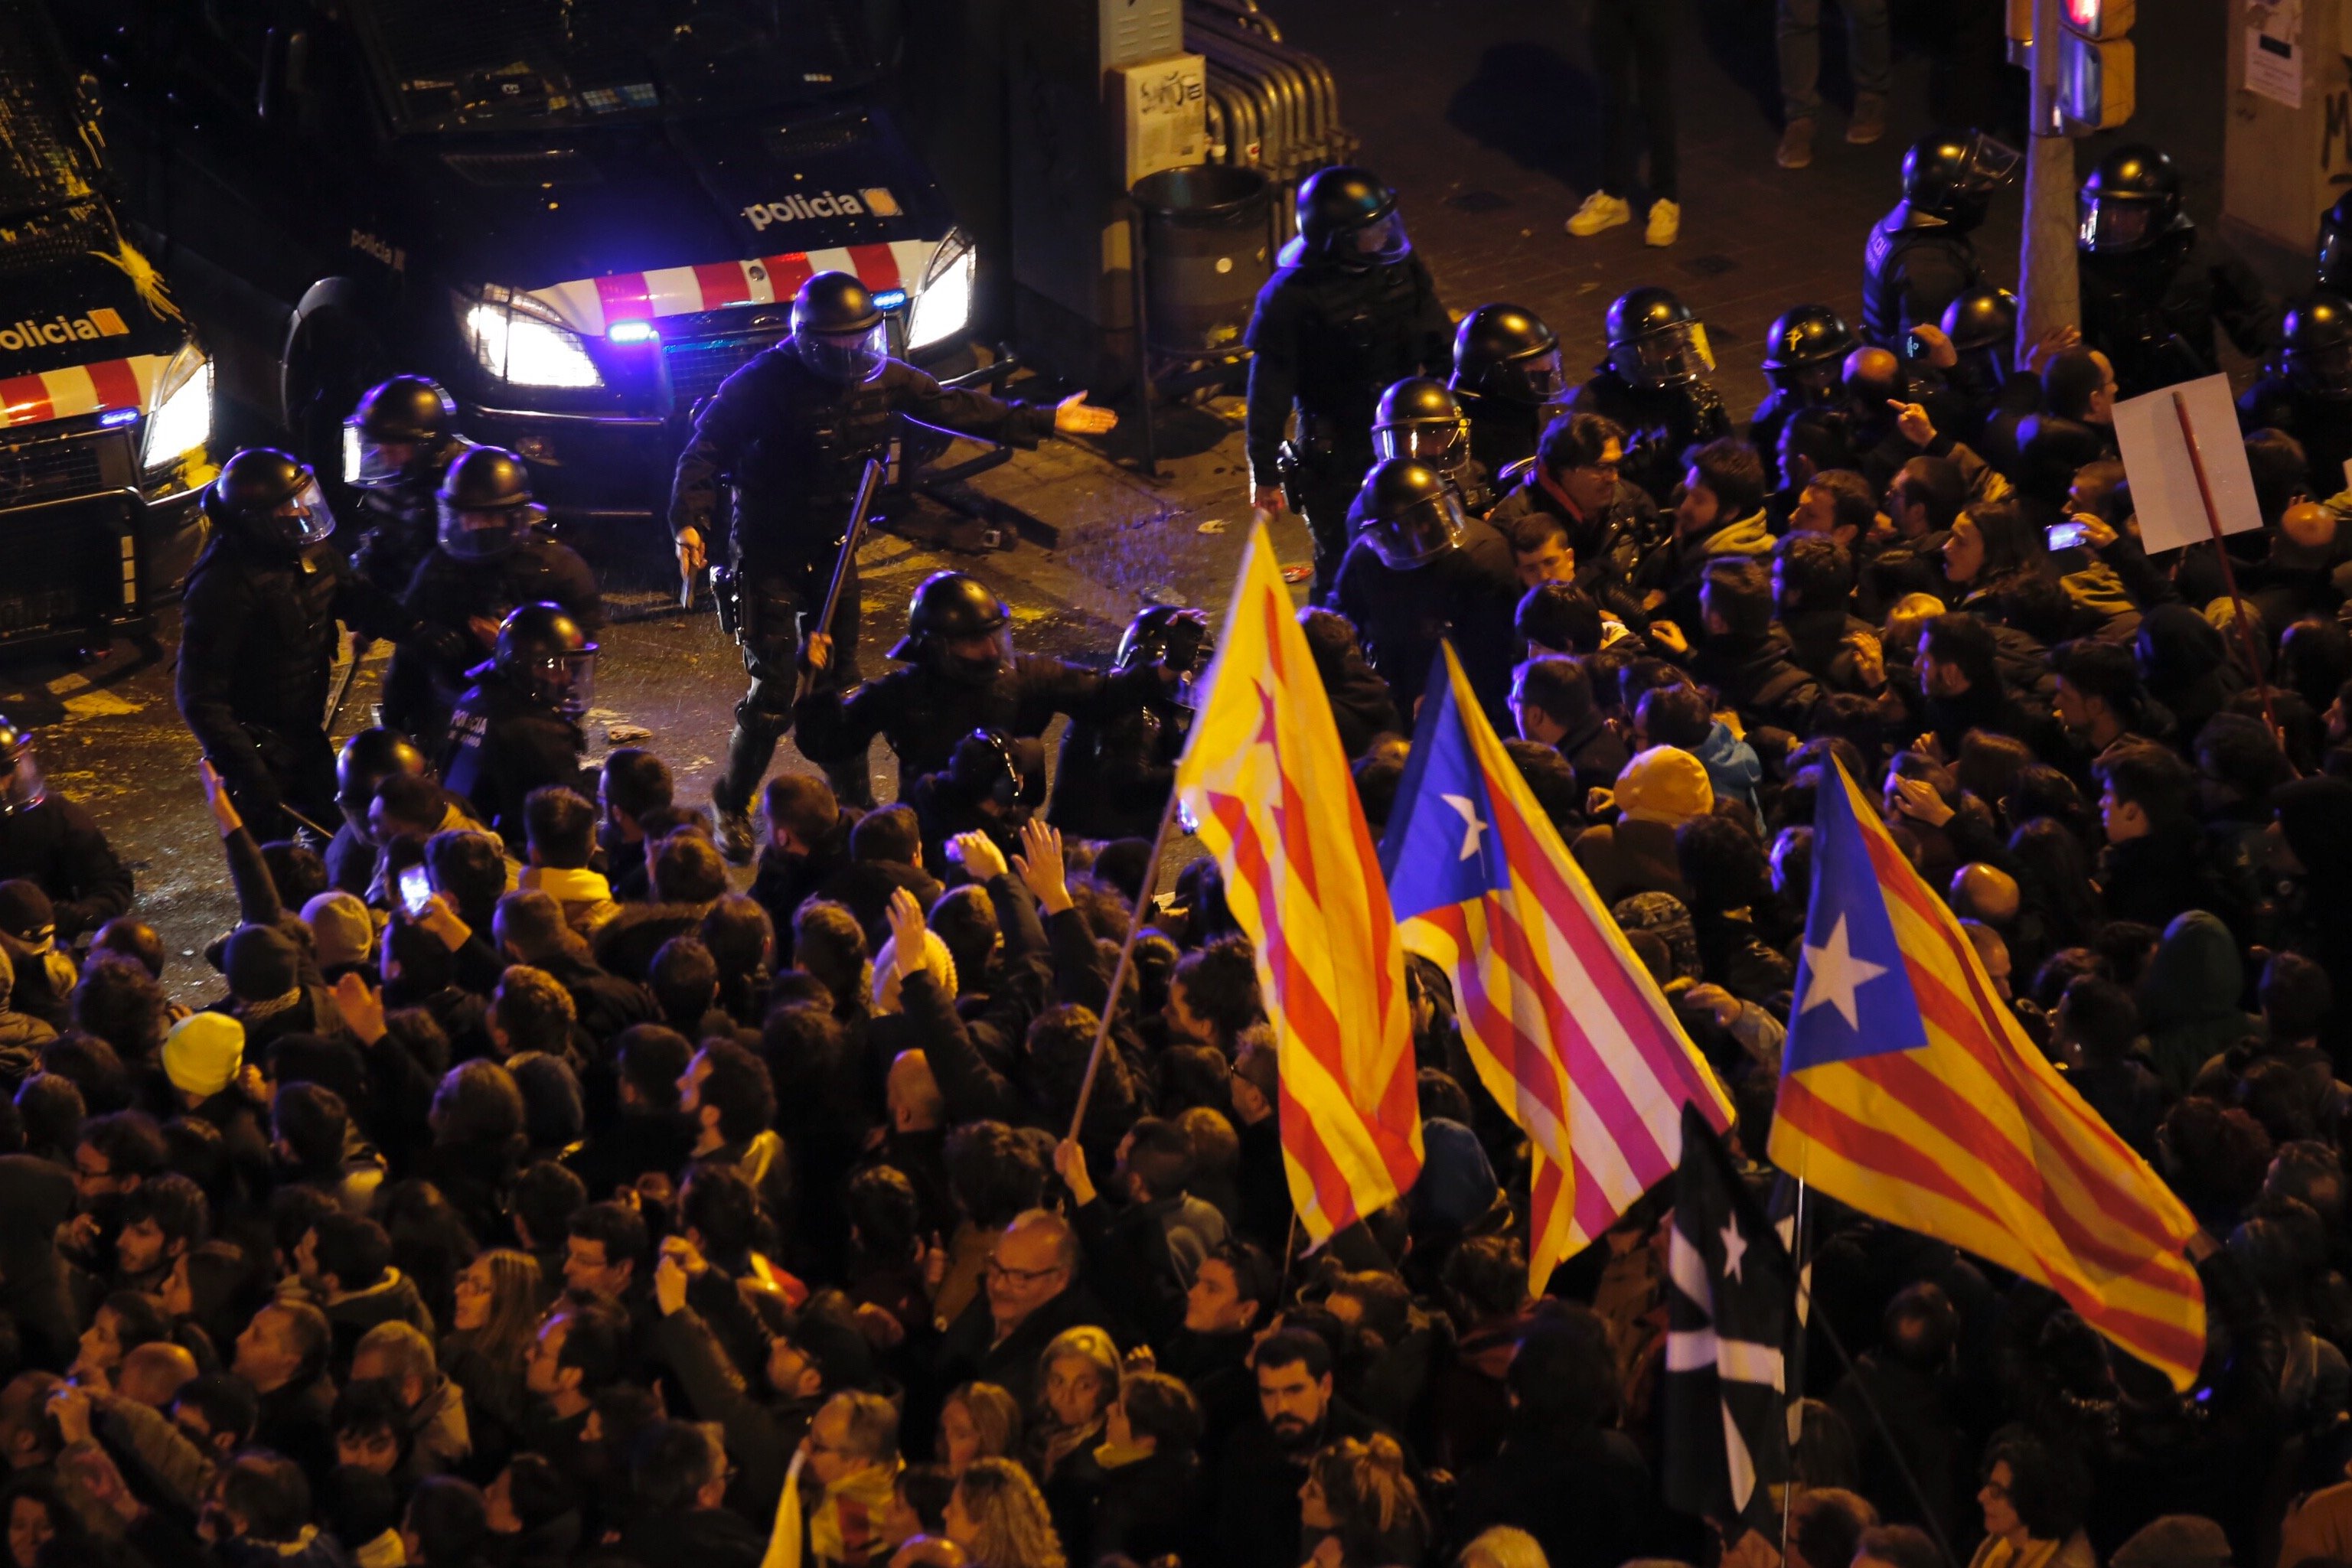 L'empresonament dels cinc diputats encén Catalunya